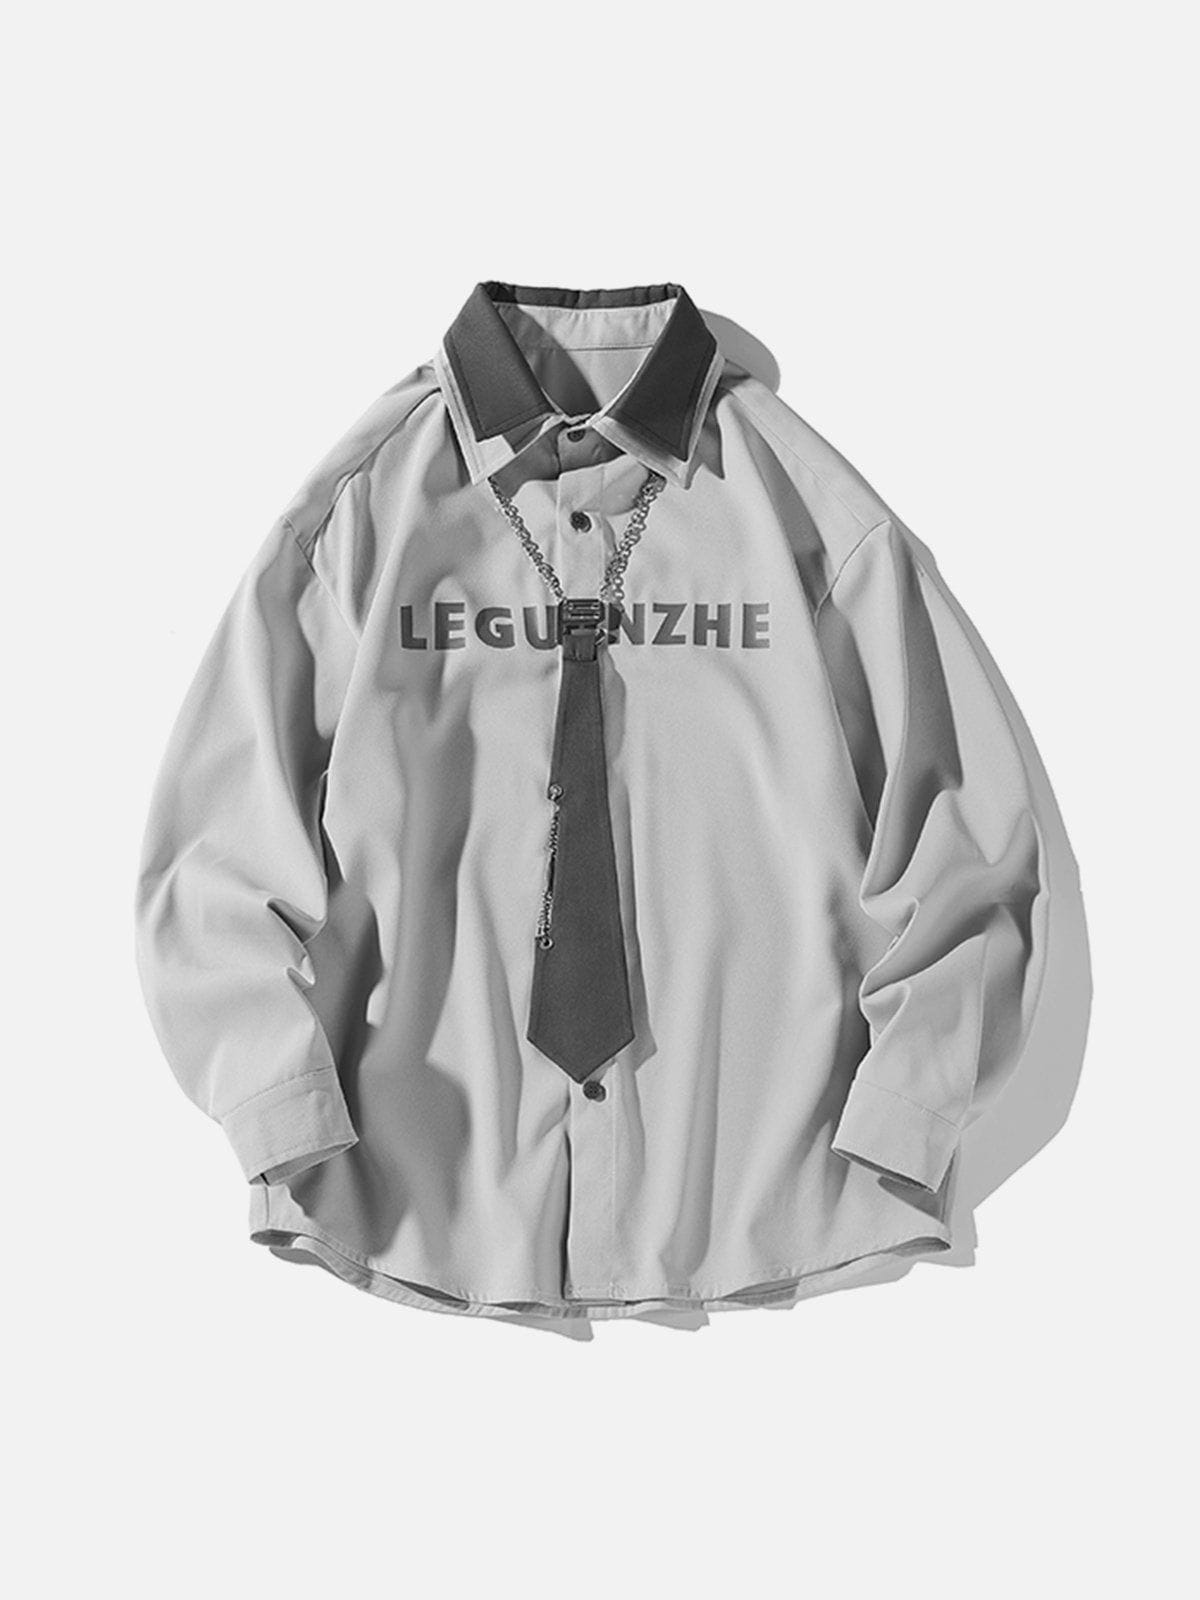 Eprezzy® - Tie Chain Trim Long-Sleeved Shirt Streetwear Fashion - eprezzy.com